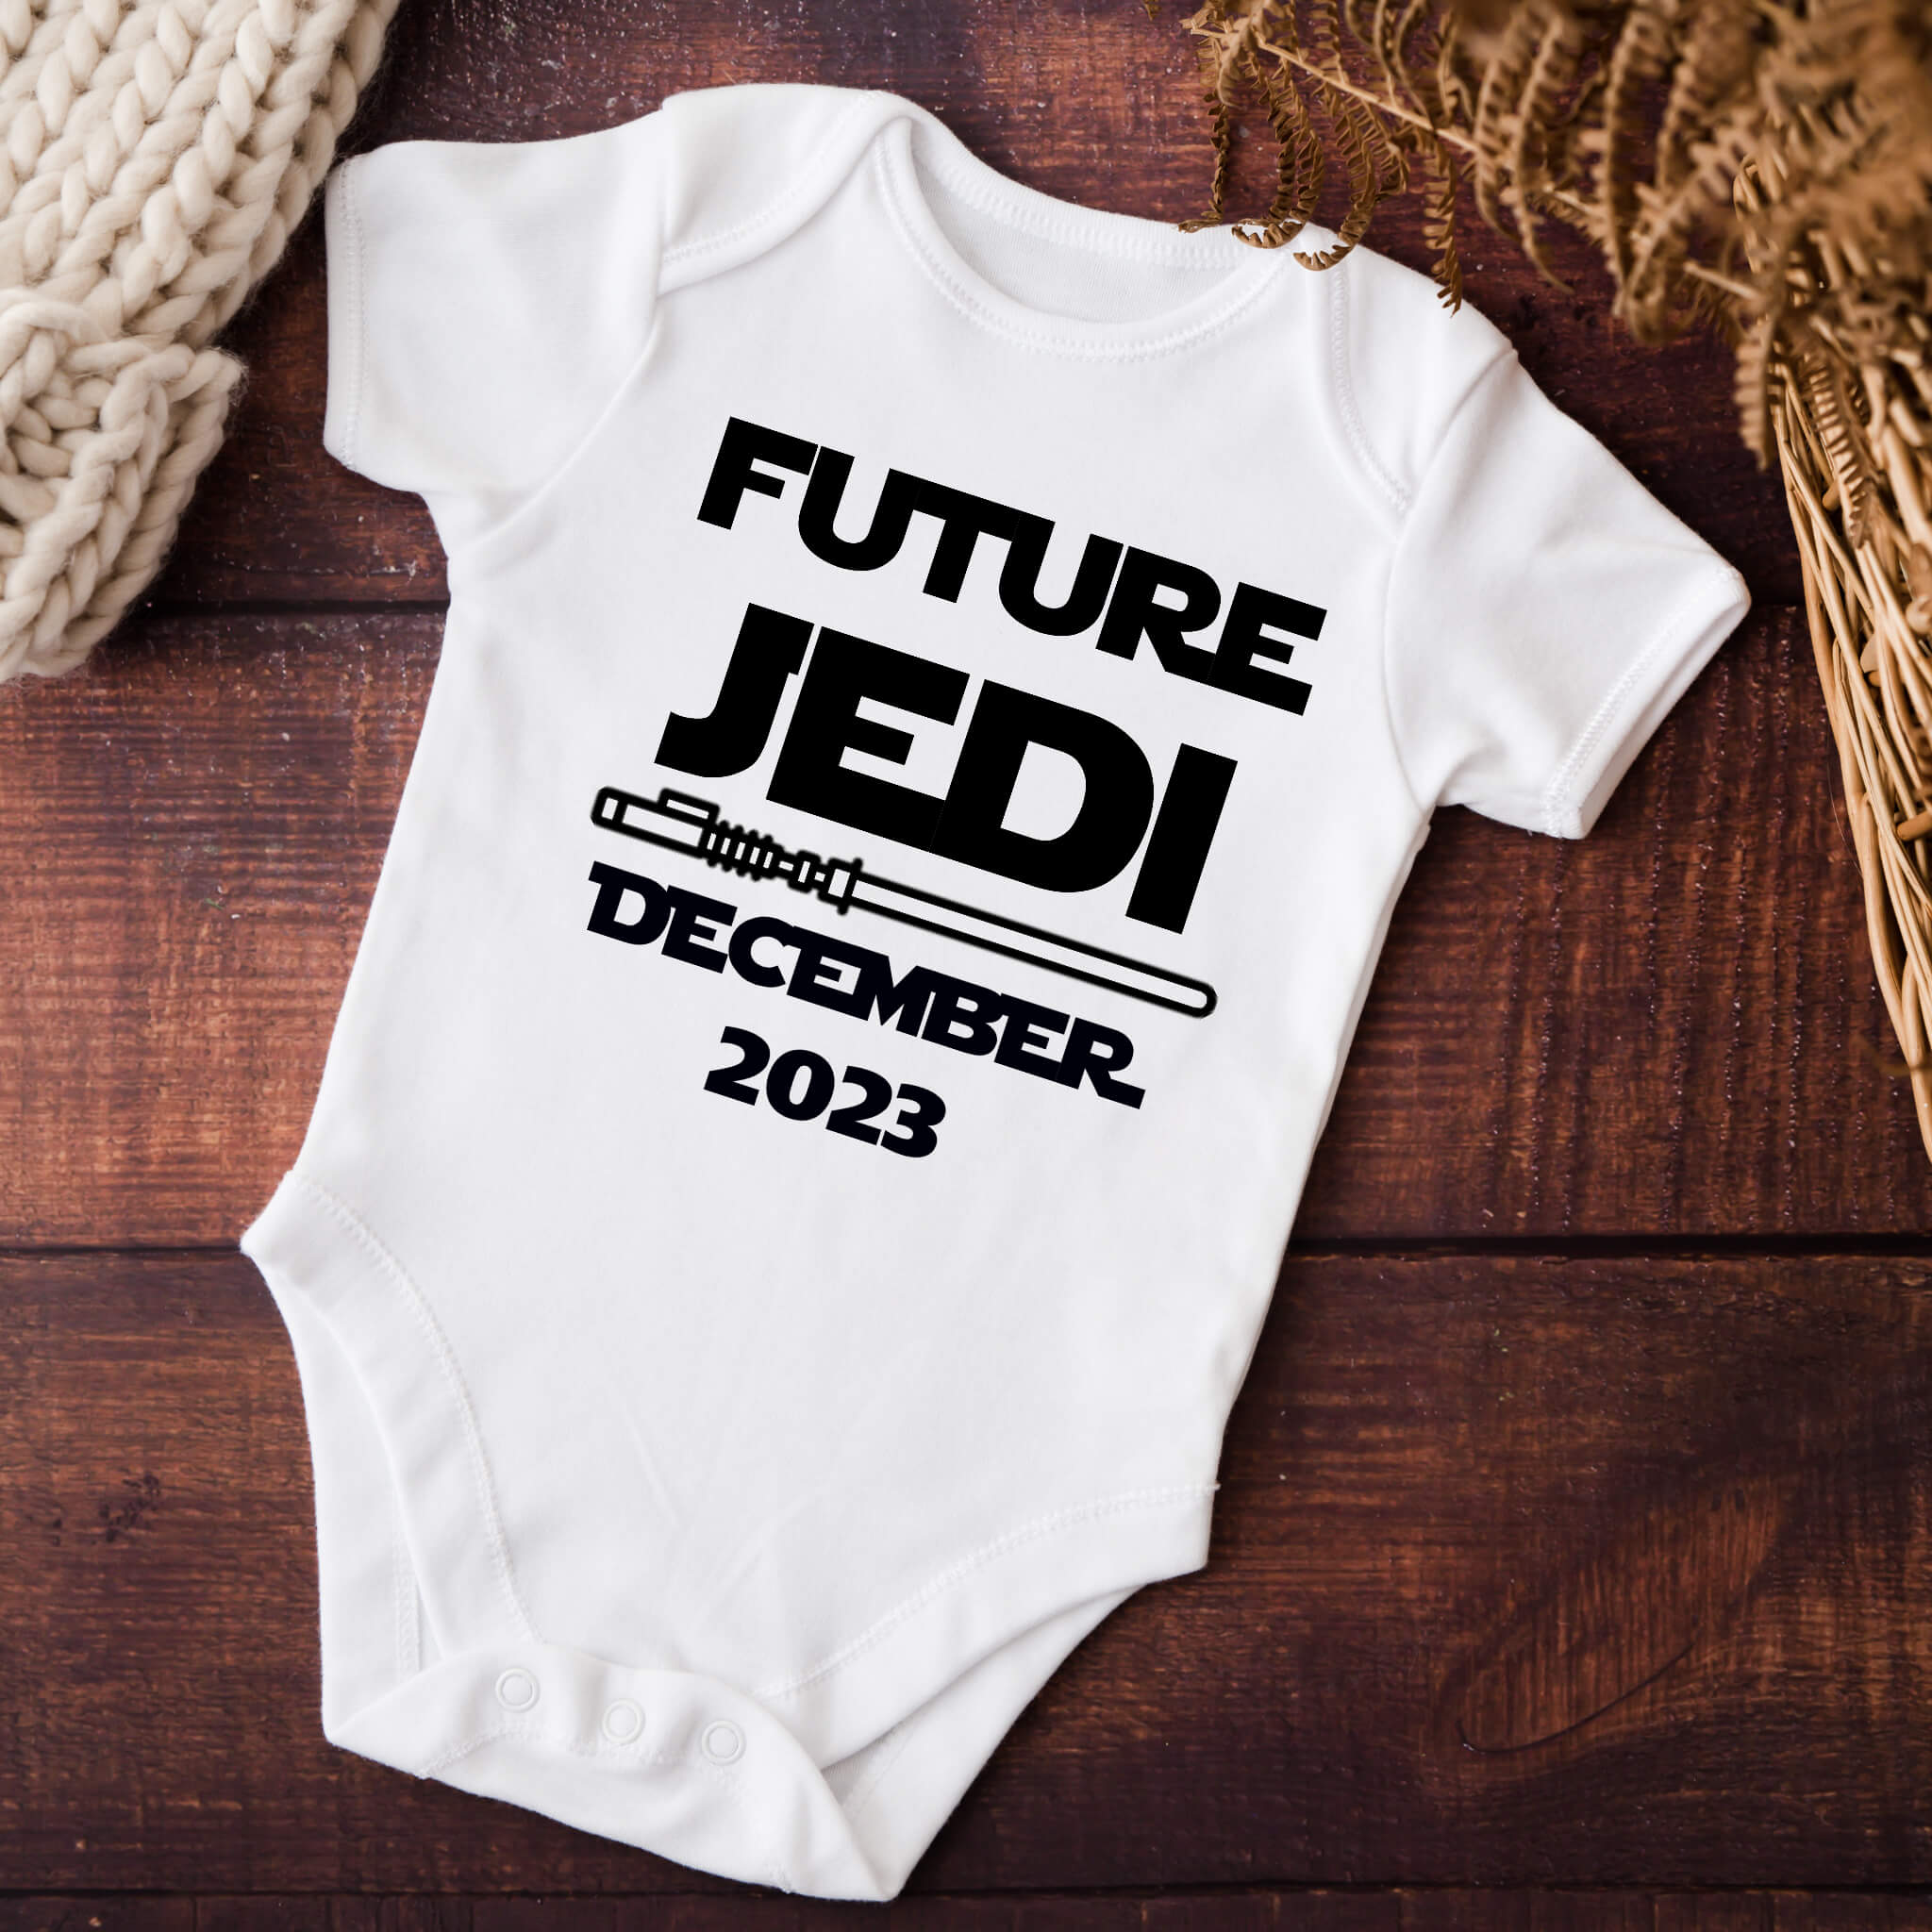 Anuncio de embarazo personalizado, futuro Jedi que viene, papá, abuela, abuelo, tía, futuro tío, mono de anuncio de bebé personalizado, anuncio de redes sociales, anuncio de bebé con caja de regalo, anuncio de embarazo de personajes de películas animadas